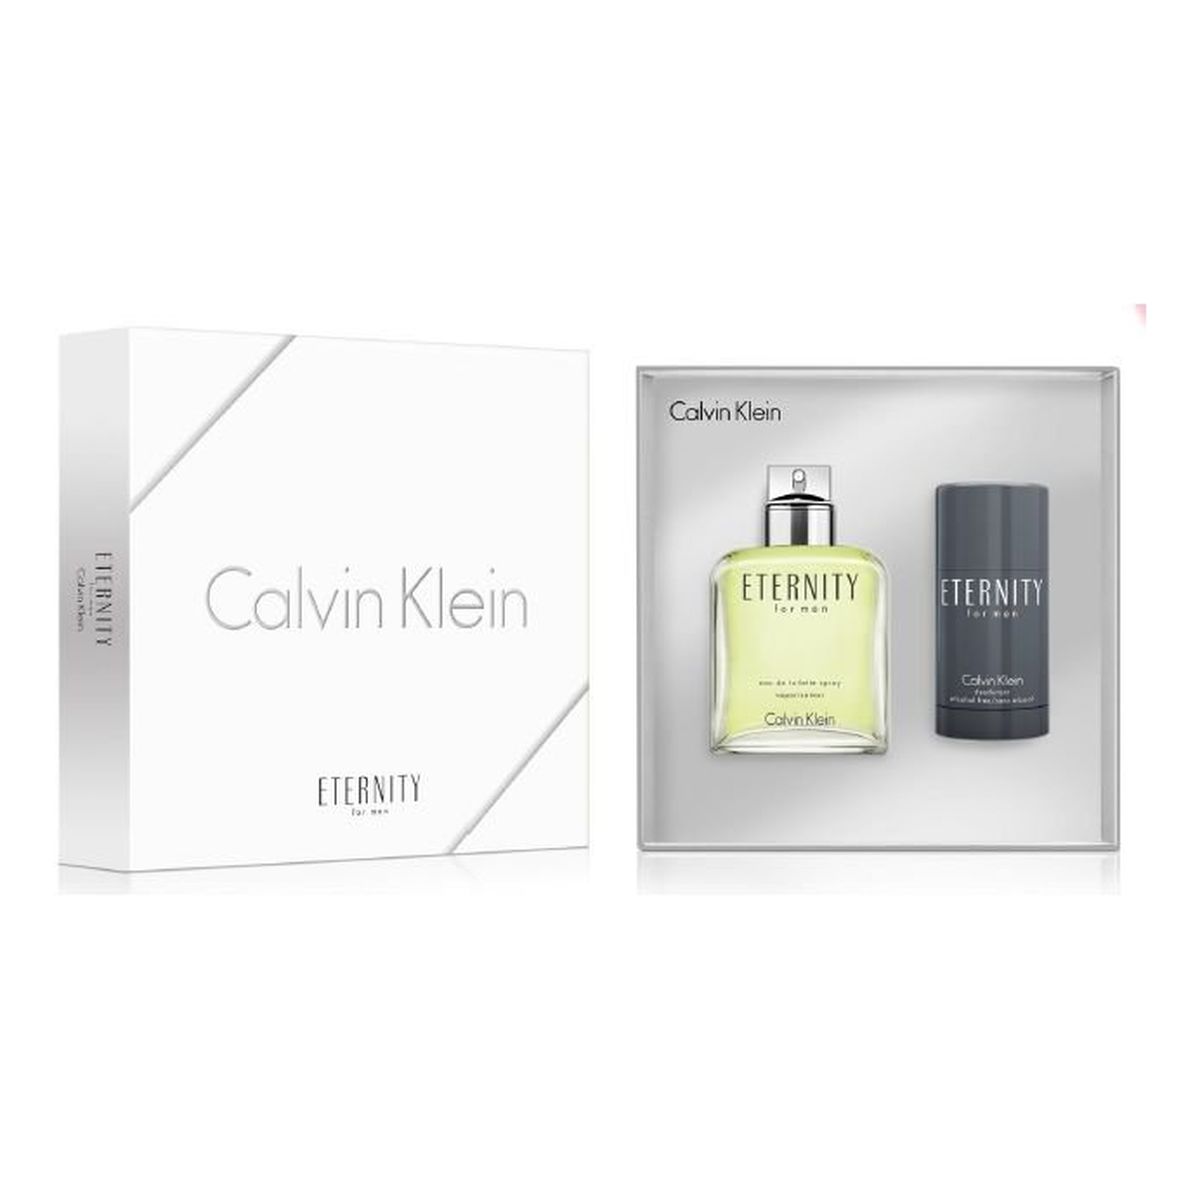 Calvin Klein Eternity Woman woda toaletowa 100ml + dezodorant 75ml